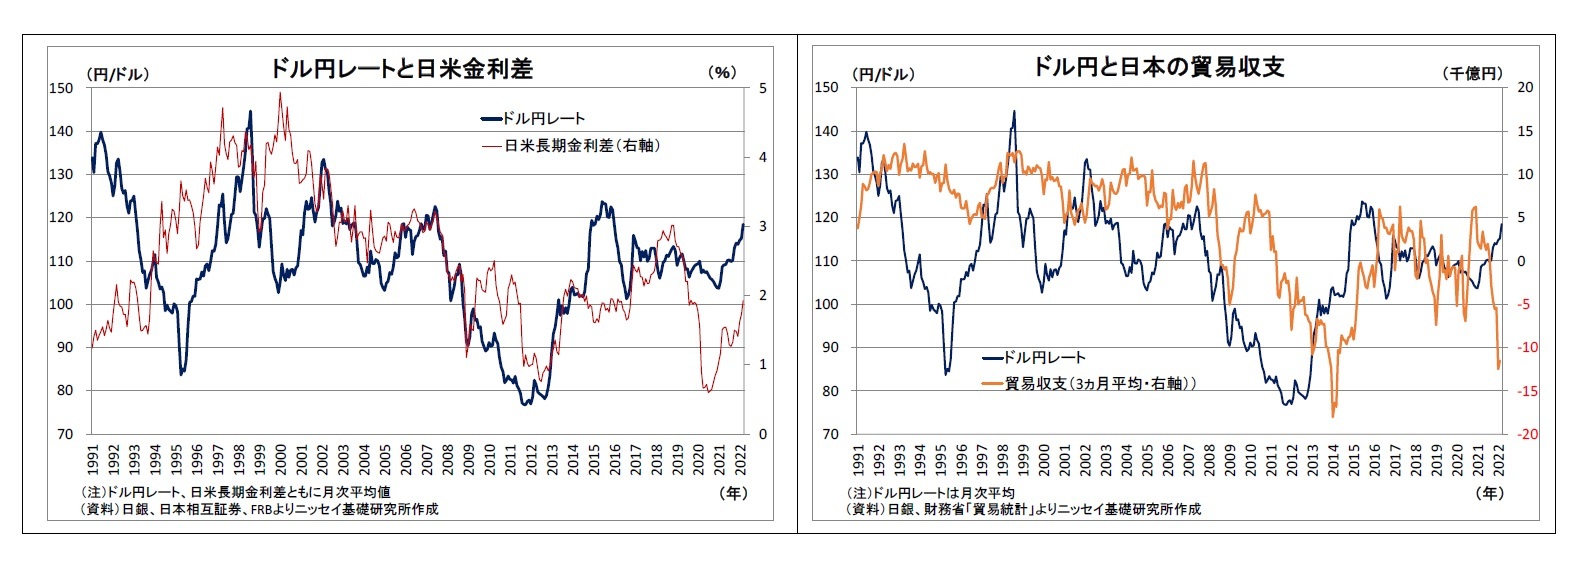 ドル円レートと日米金利差/ドル円と日本の貿易収支